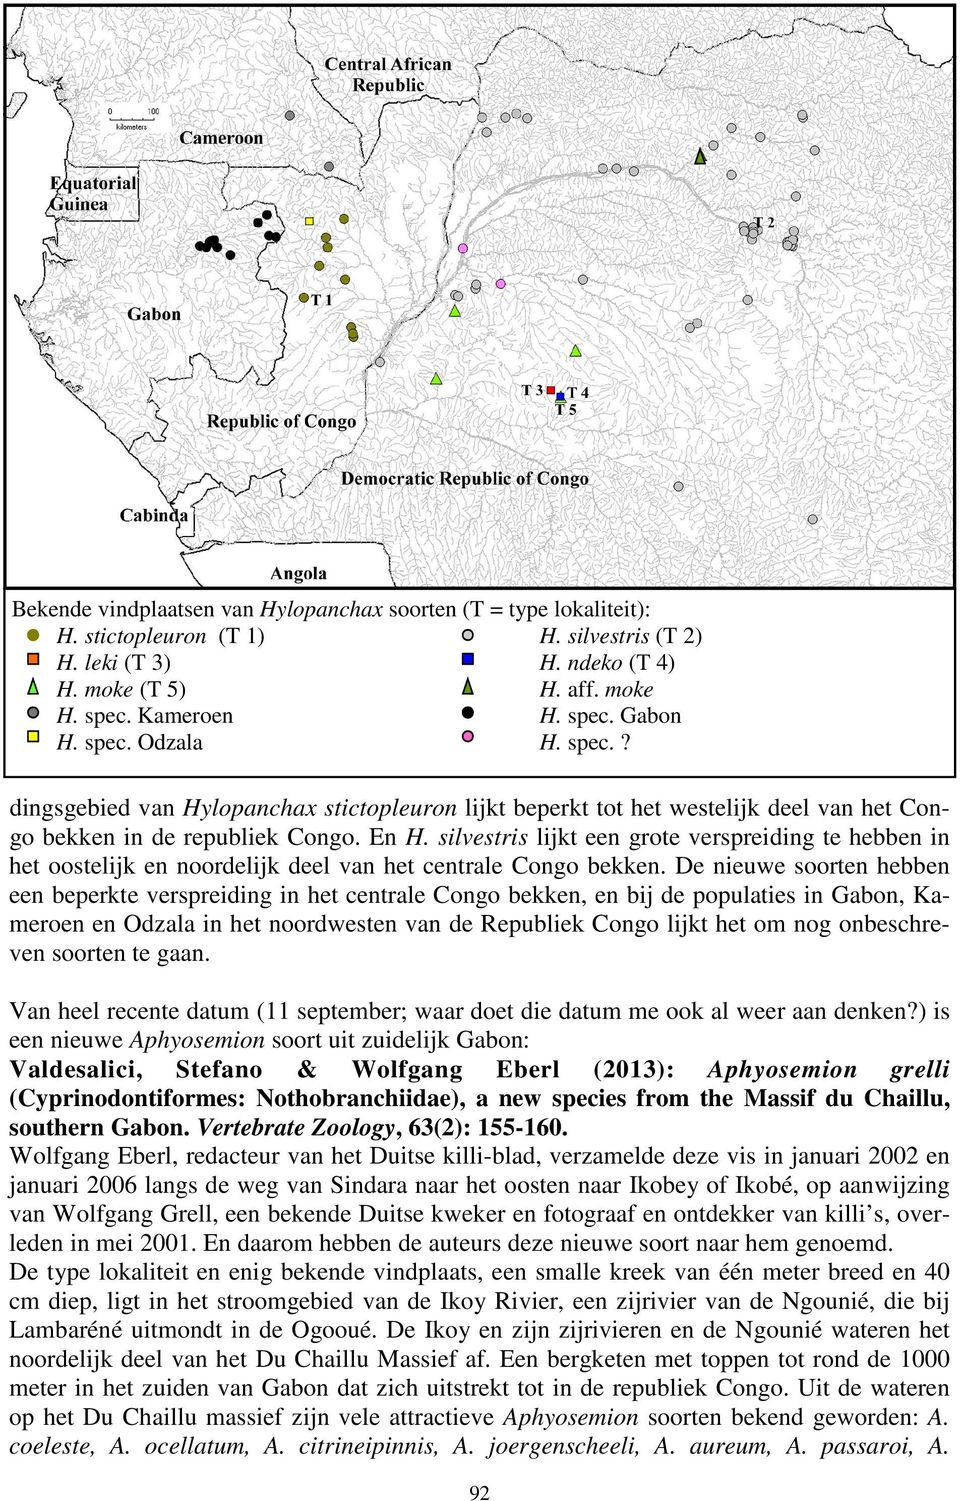 silvestris lijkt een grote verspreiding te hebben in het oostelijk en noordelijk deel van het centrale Congo bekken.